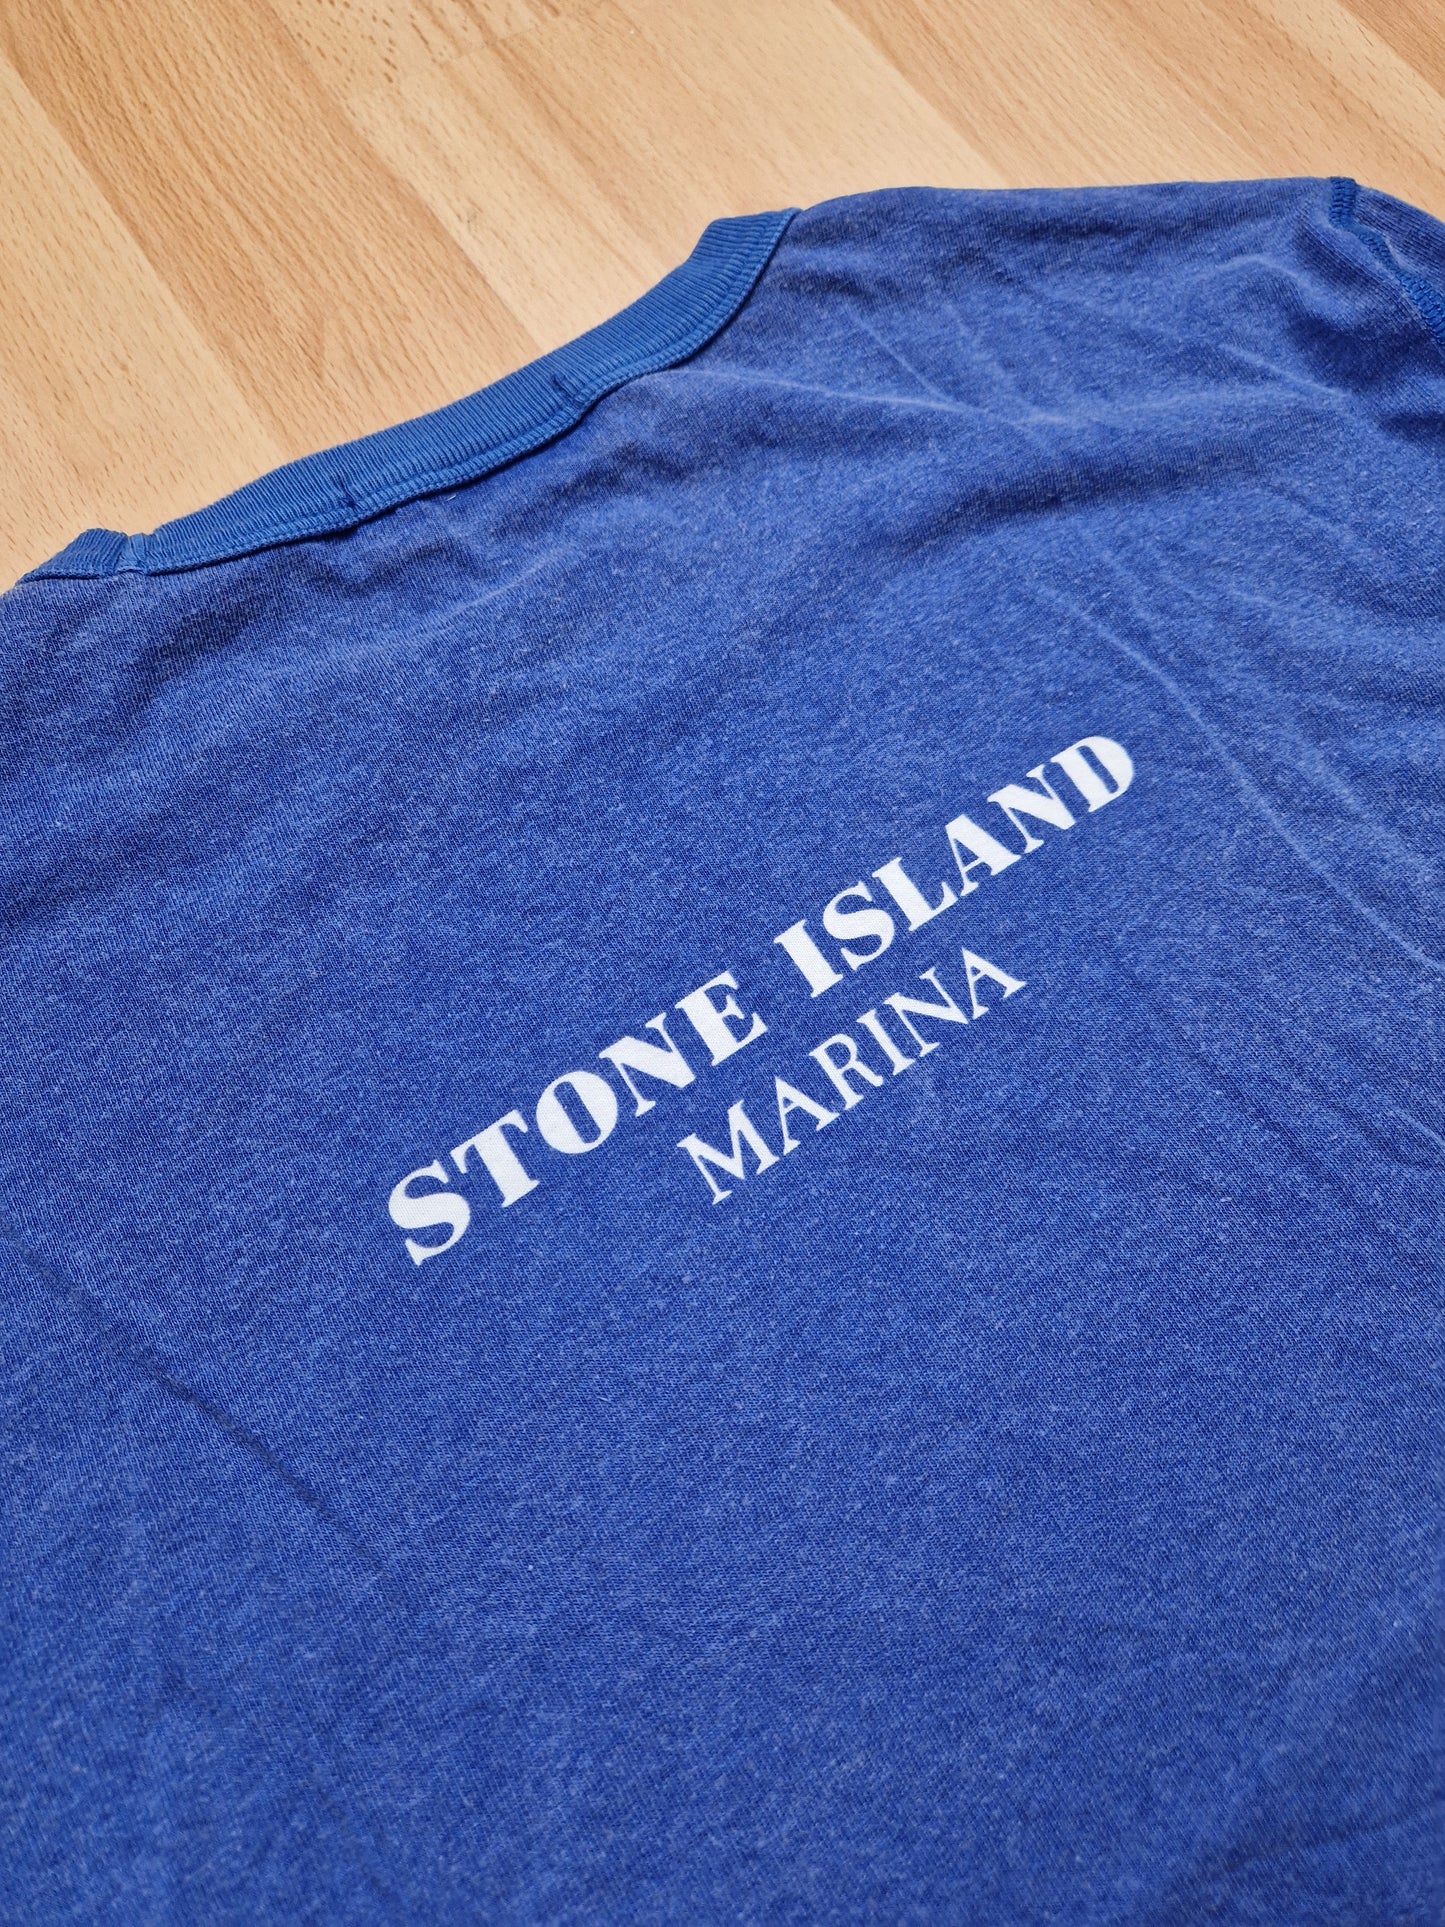 Stone Island Marina Striped LS Top (M)